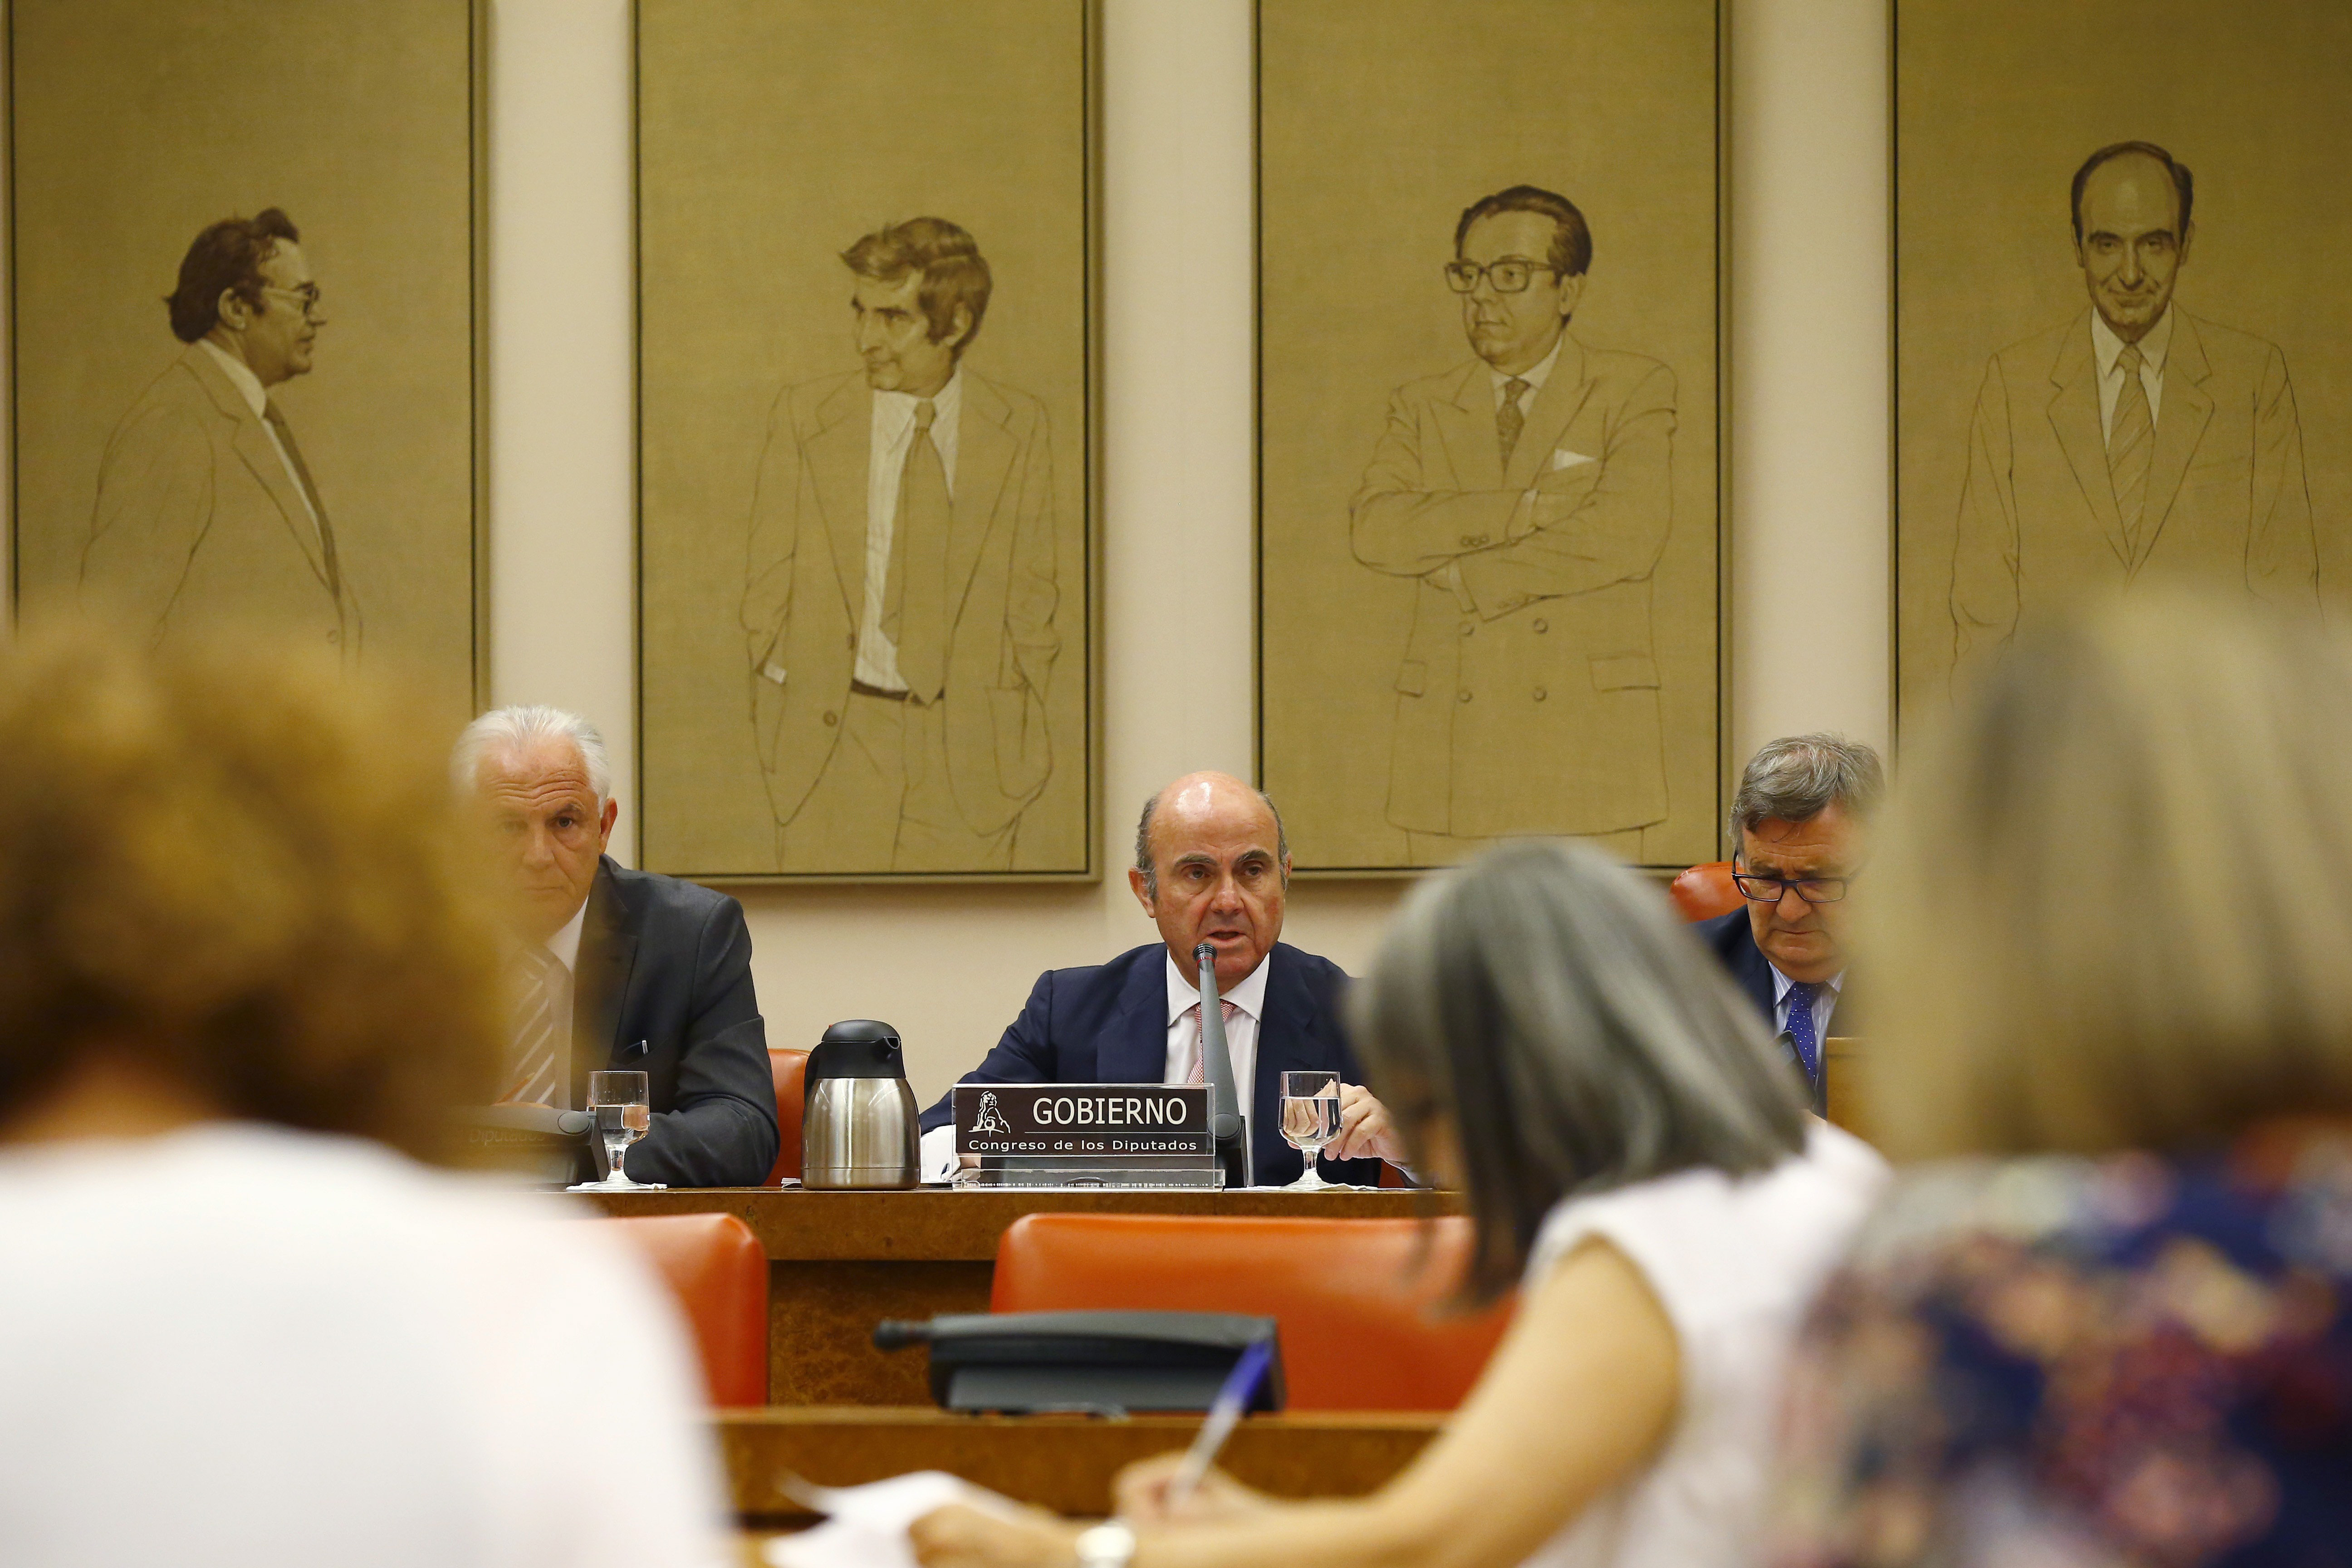  El ministro de Economía, Luis de Guindos, durante su comparecencia a petición propia ante la Comisión de Economía del Congreso para defender la intervención europea del Banco Popu